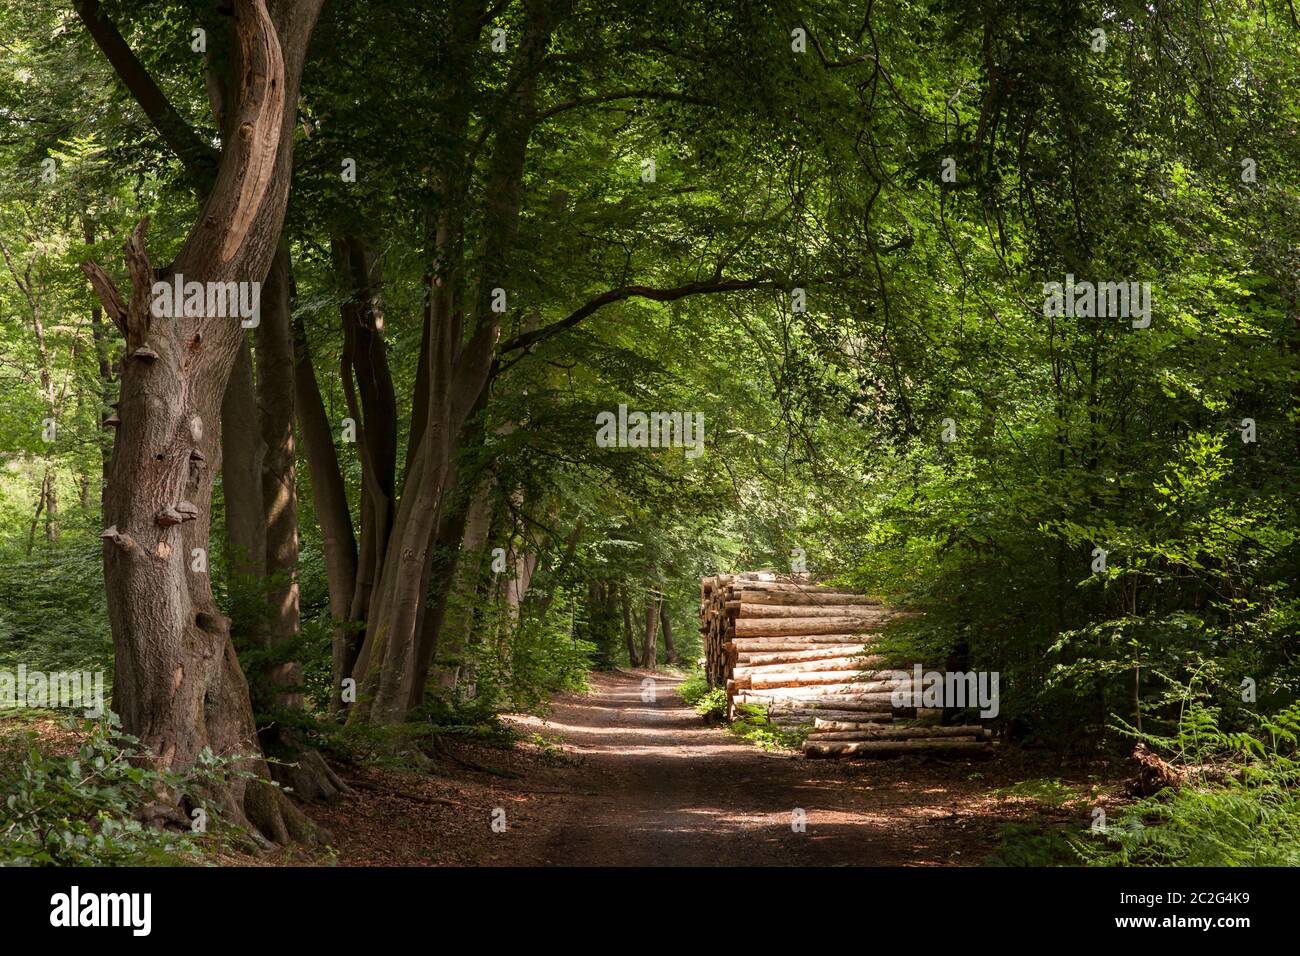 Gefällte Bäume, Baumstämme, in einem Wald bei Haltern im Bezirk Recklinghausen, Nordrhein-Westfalen, Deutschland. Gefauelte Bäume, Baumstaemme, i Stockfoto